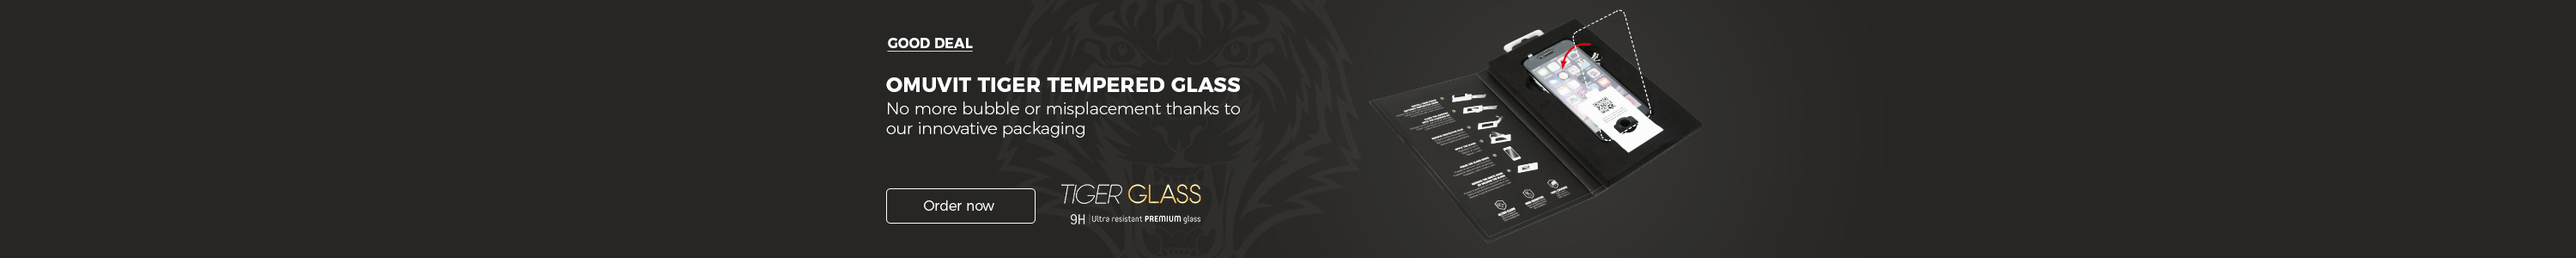 grande image tempered glass omuvit tiger 